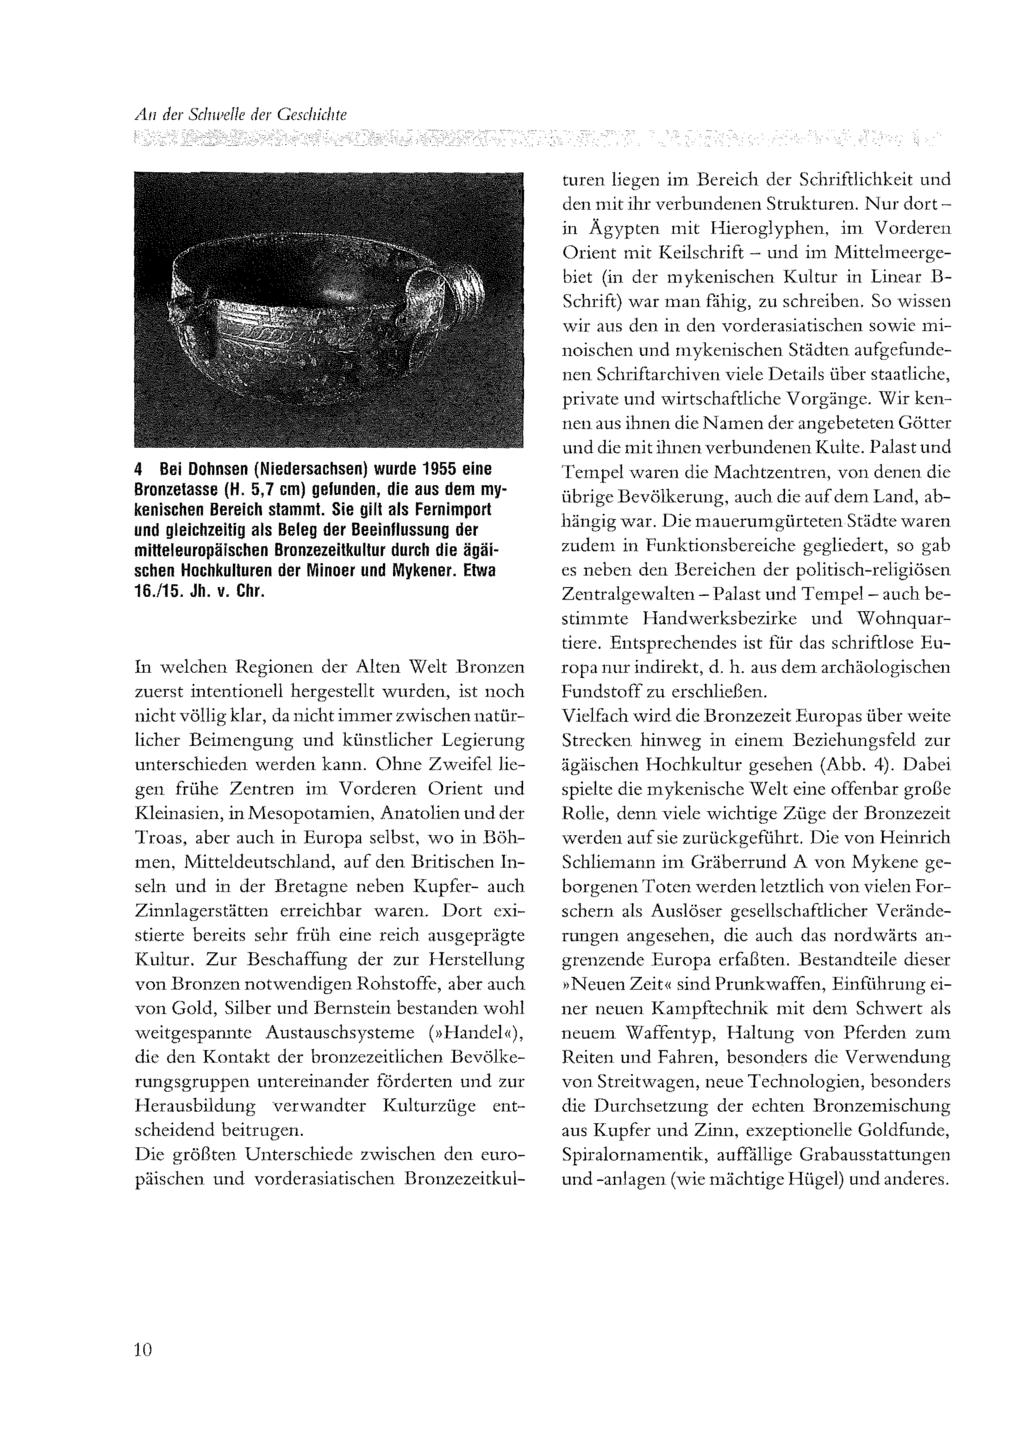 A/1 der Schwelle der Geschichte 4 Bei Dohnsen (Niedersachsen) wurde 1955 eine Bronzetasse (H. 5,7 cm) gefunden, die aus dem mykenischen Bereich stammt.